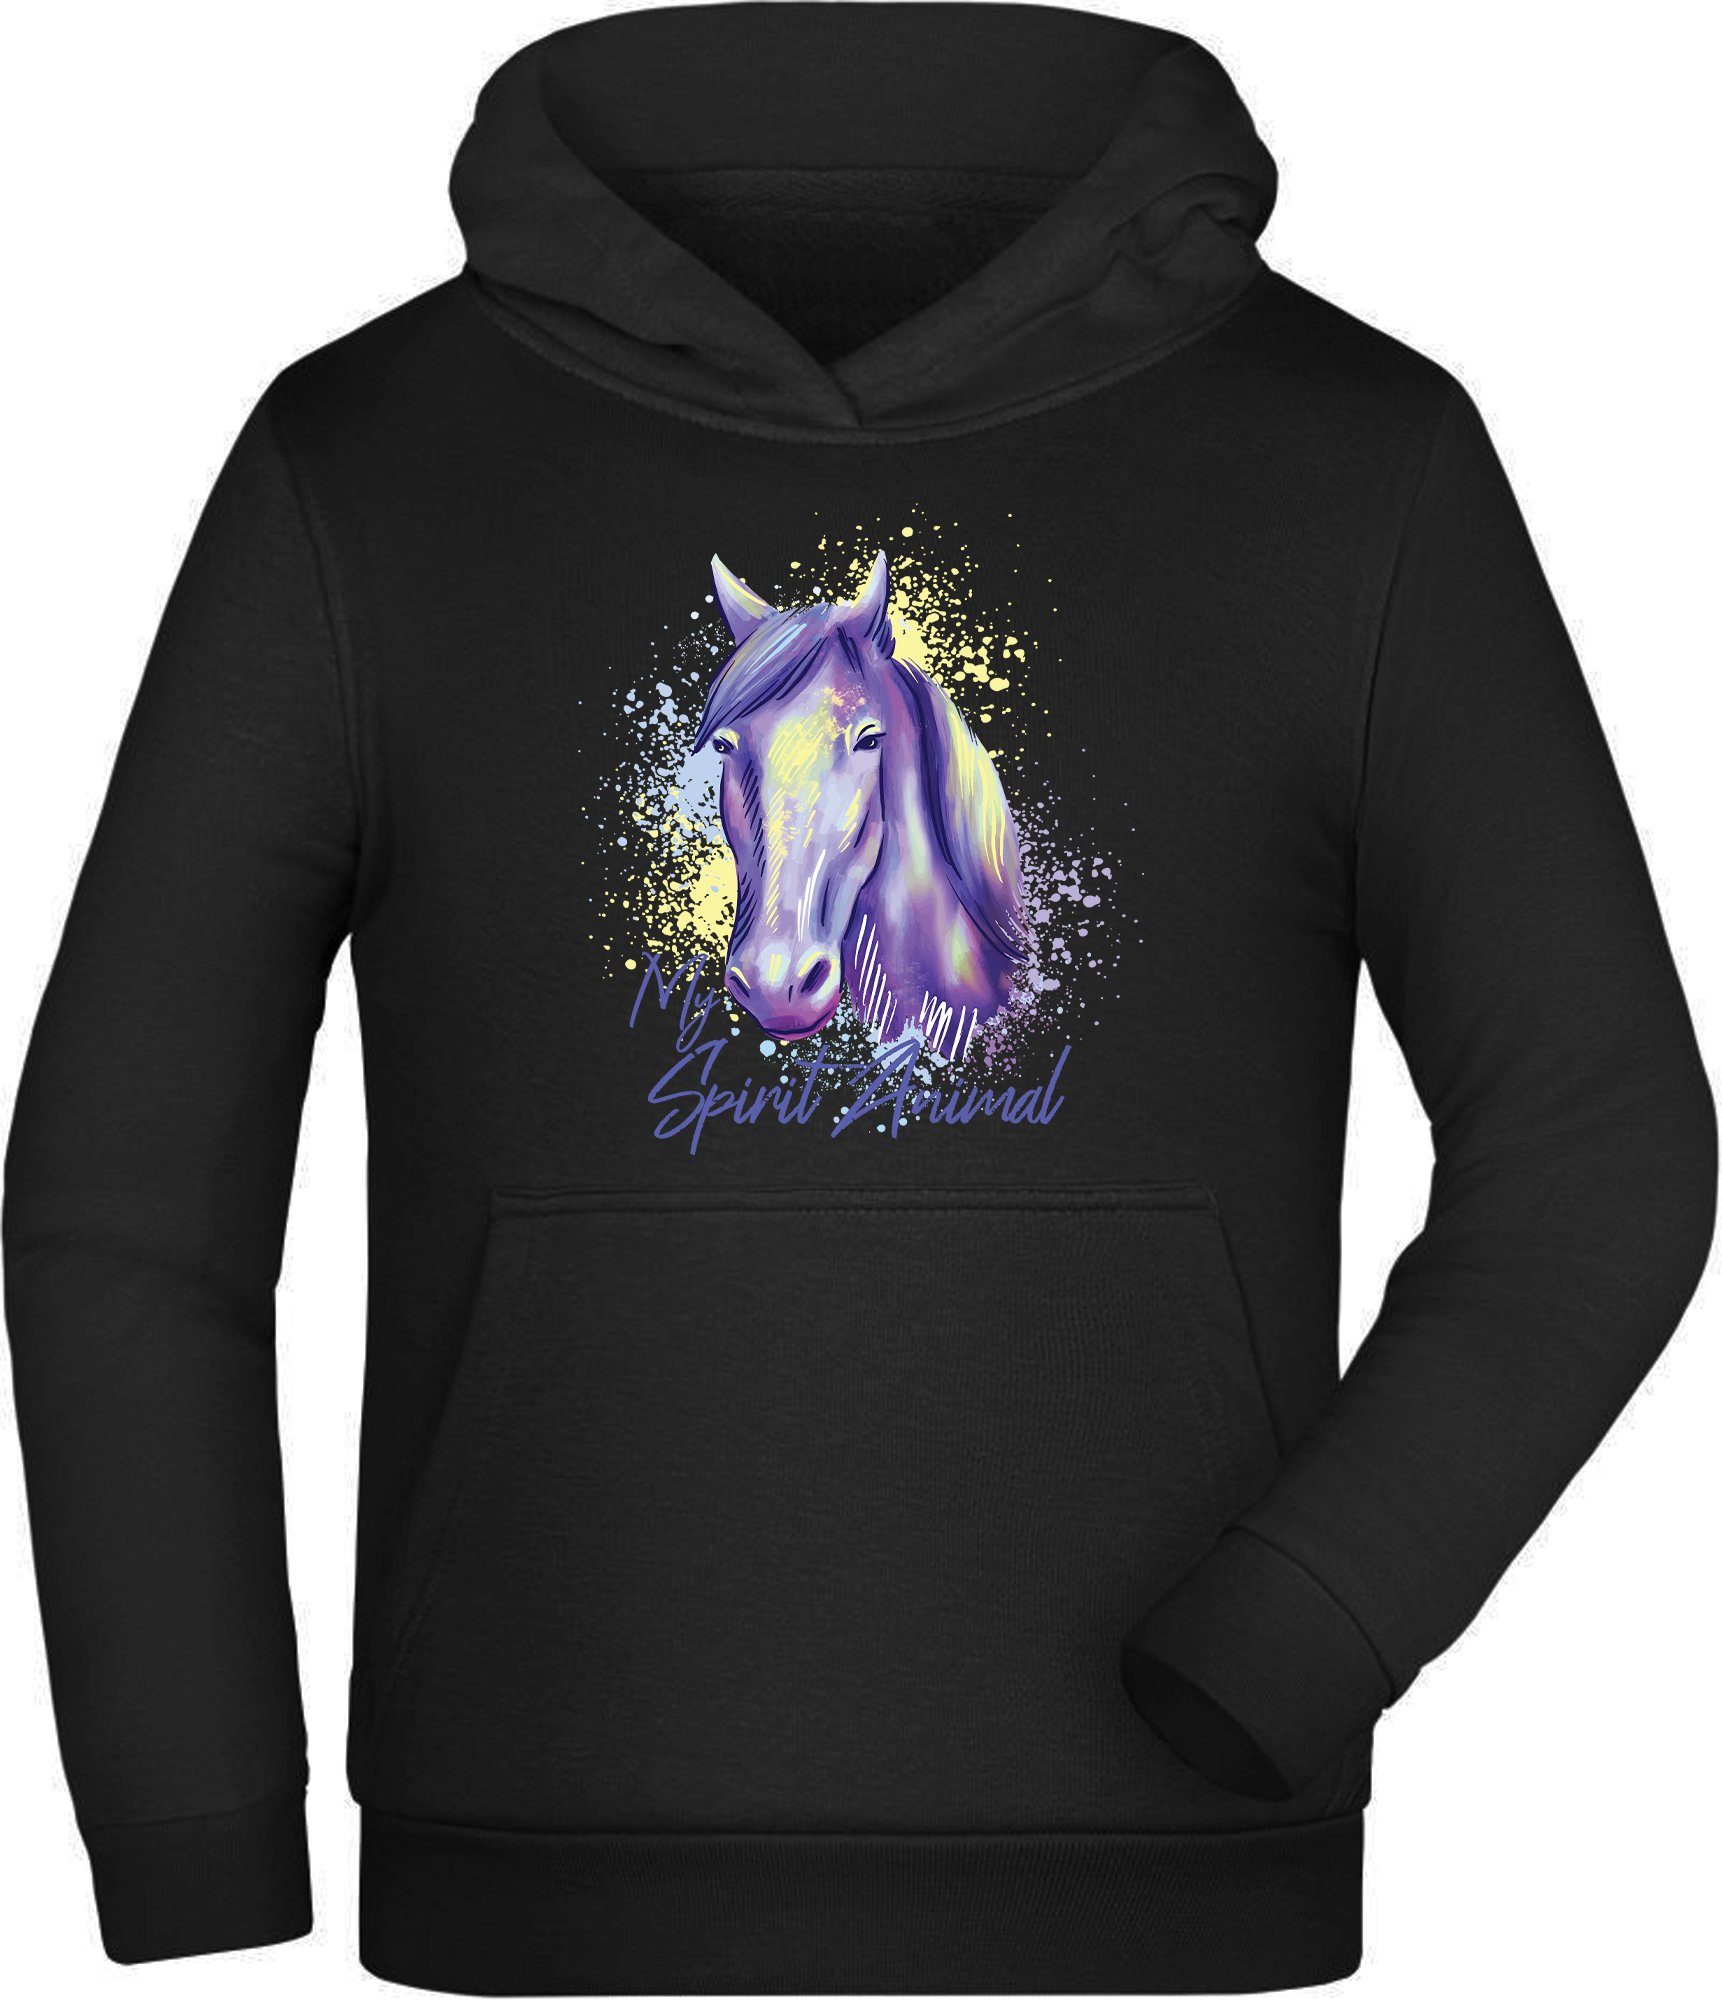 Versandhandel zum günstigsten Preis MyDesign24 Hoodie Kinder Kapuzen Hoodie Pferde Kapuzensweater Pferdekopf Sweatshirt i158 Aufdruck, mit lila